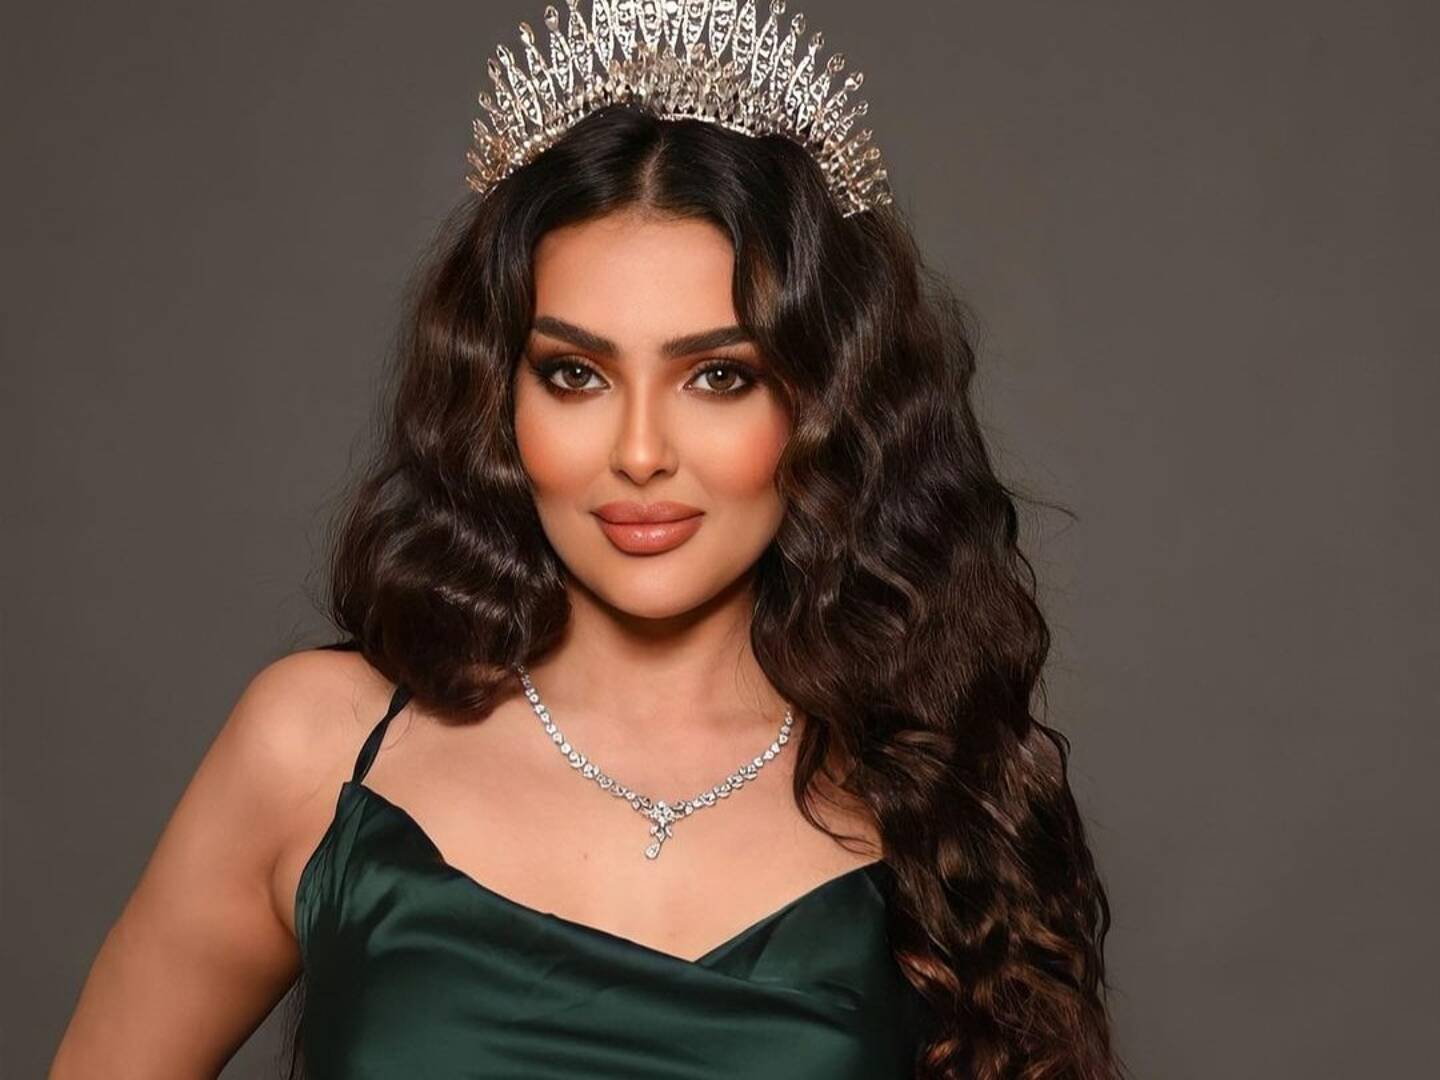 Fin mars, Rumy al-Qahtani, mannequin de Ryad, a fait le buzz sur les réseaux sociaux en annonçant à ses centaines de milliers d'abonnés sur Instagram qu'elle était "honorée" d'avoir été choisie pour représenter le royaume à Miss Univers.